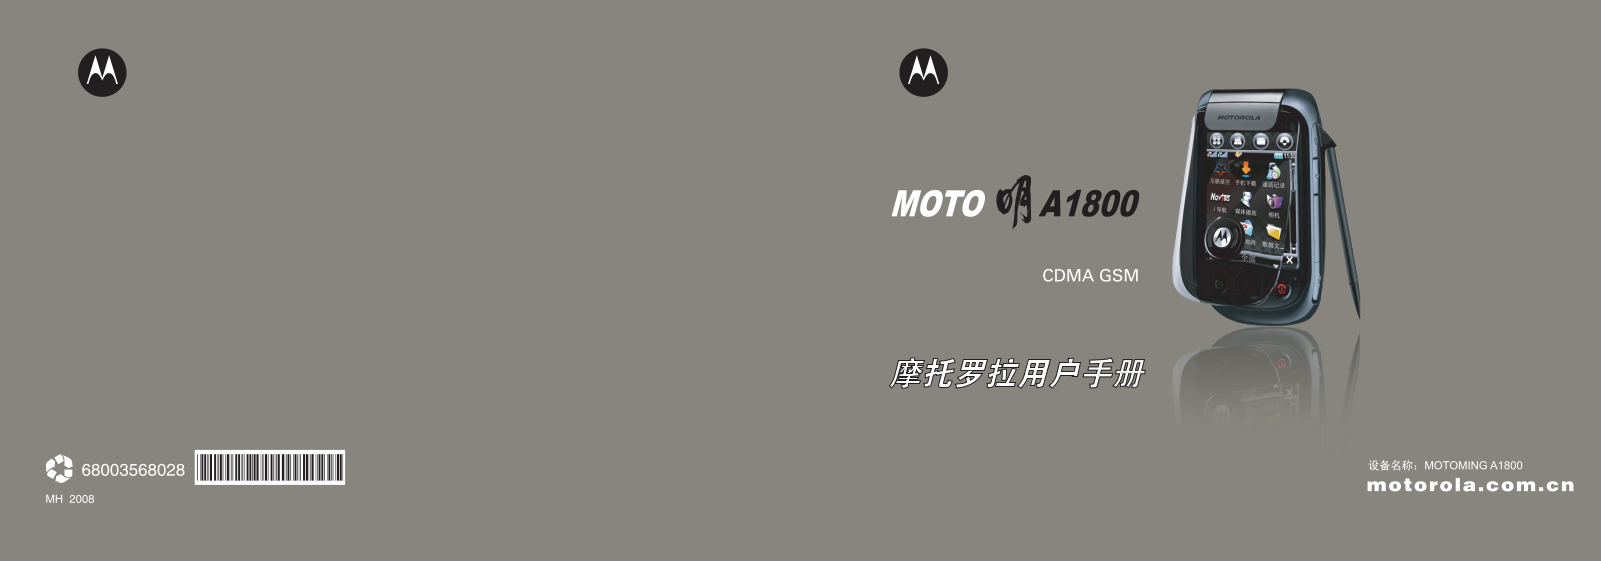 Motorola A1800CT User Manual